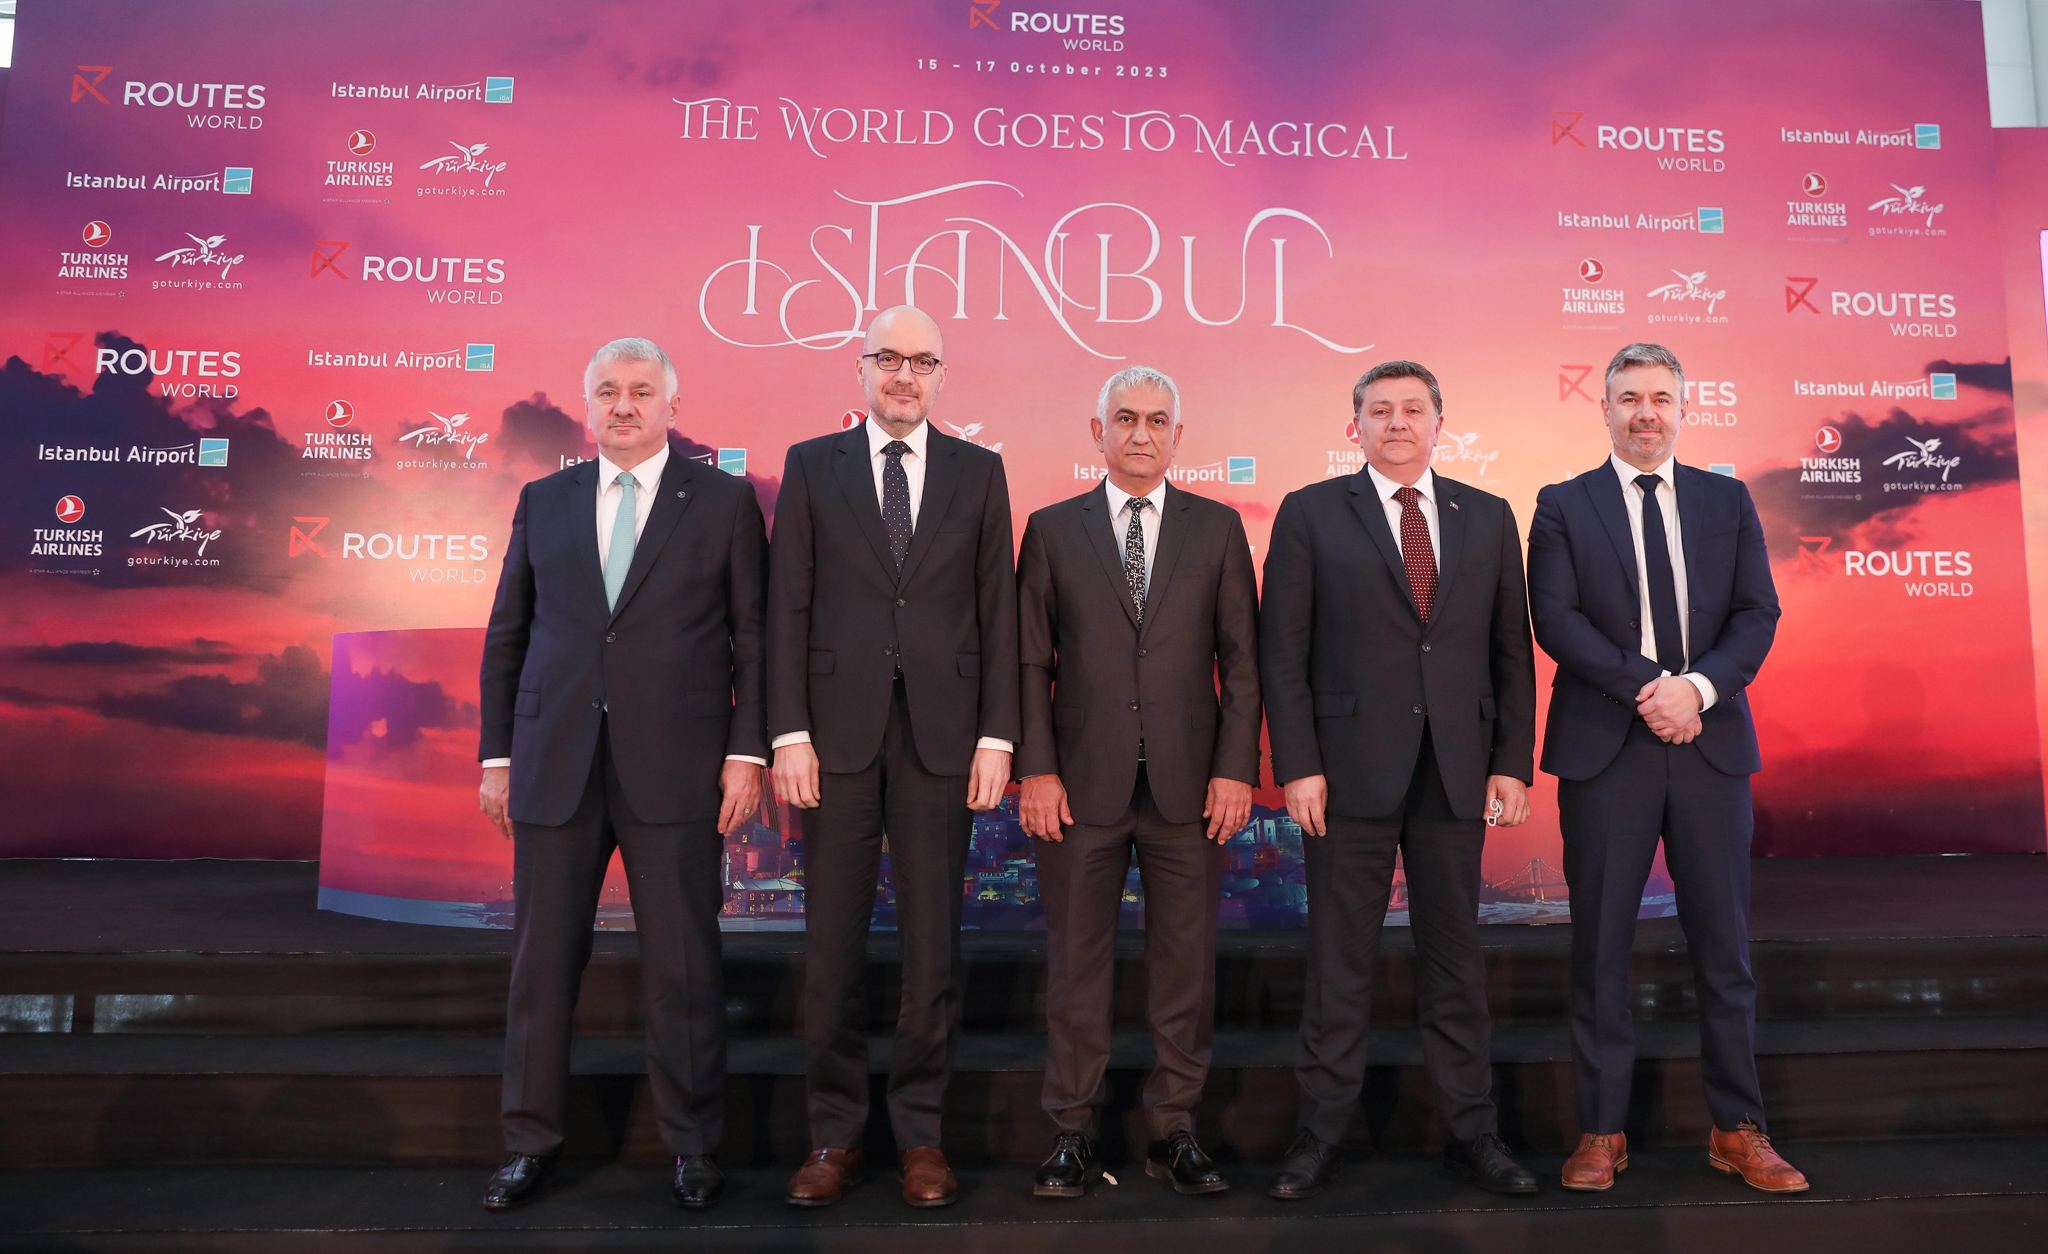 İstanbul Havalimanı, Routes World 2023’ün resmi ev sahibi oldu Haber Aero